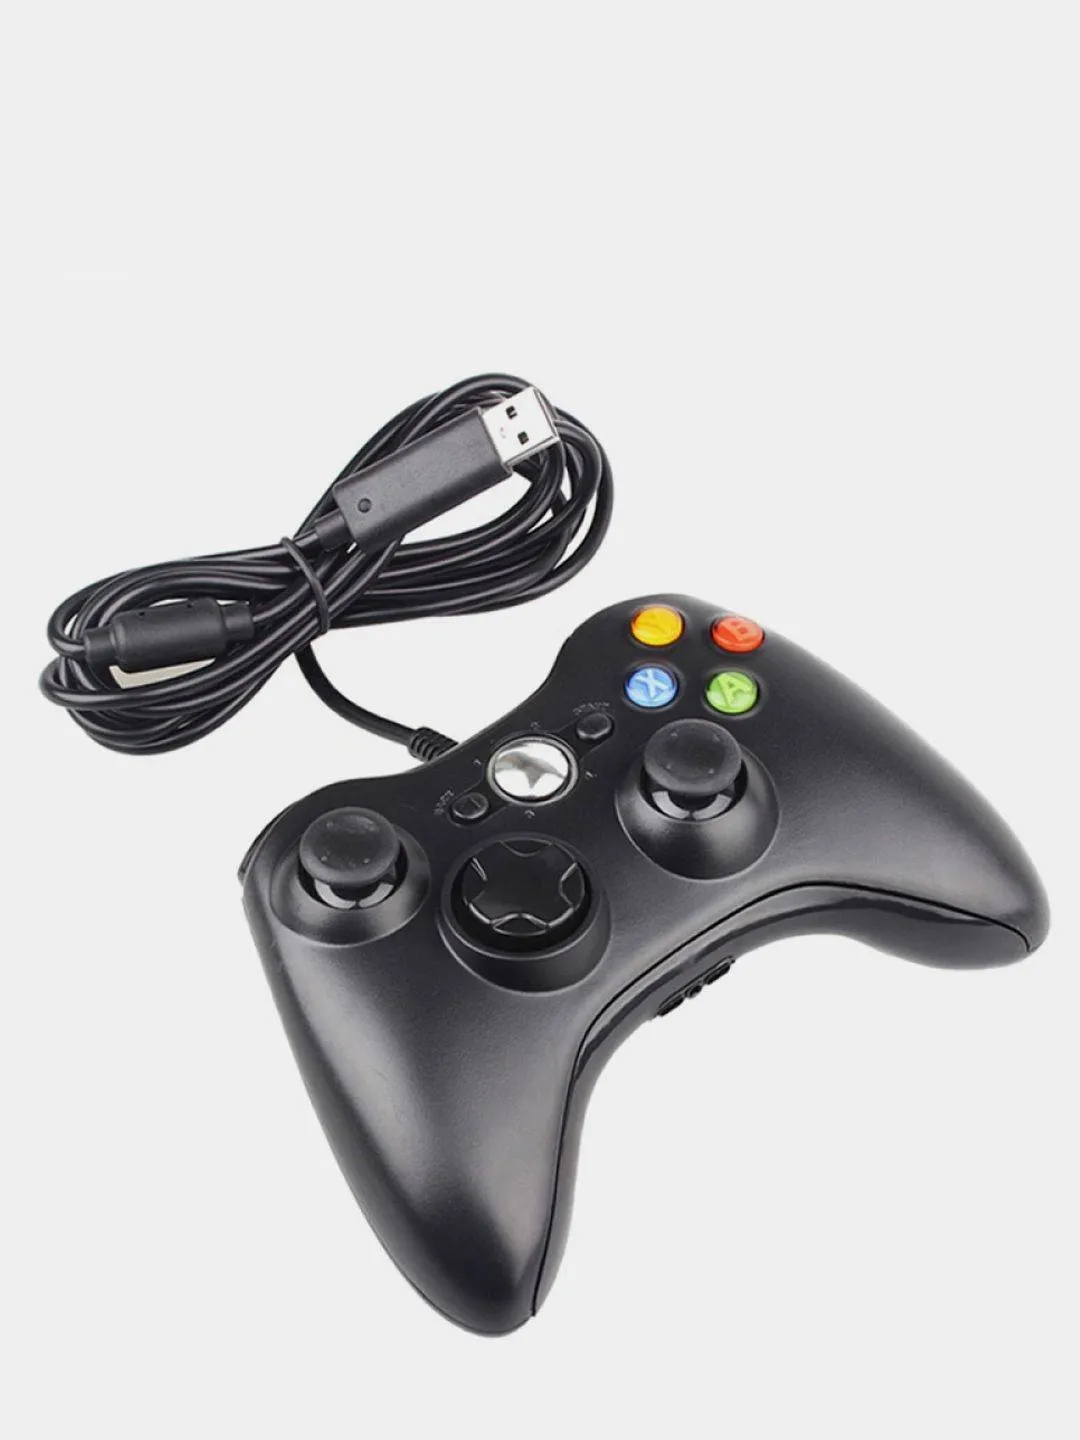 Купить проводной джойстик. Геймпад хбокс 360. Геймпад Xbox 360 проводной. Геймпад проводной Controller Black (Xbox 360). Геймпад Xbox 360 чёрный проводной.